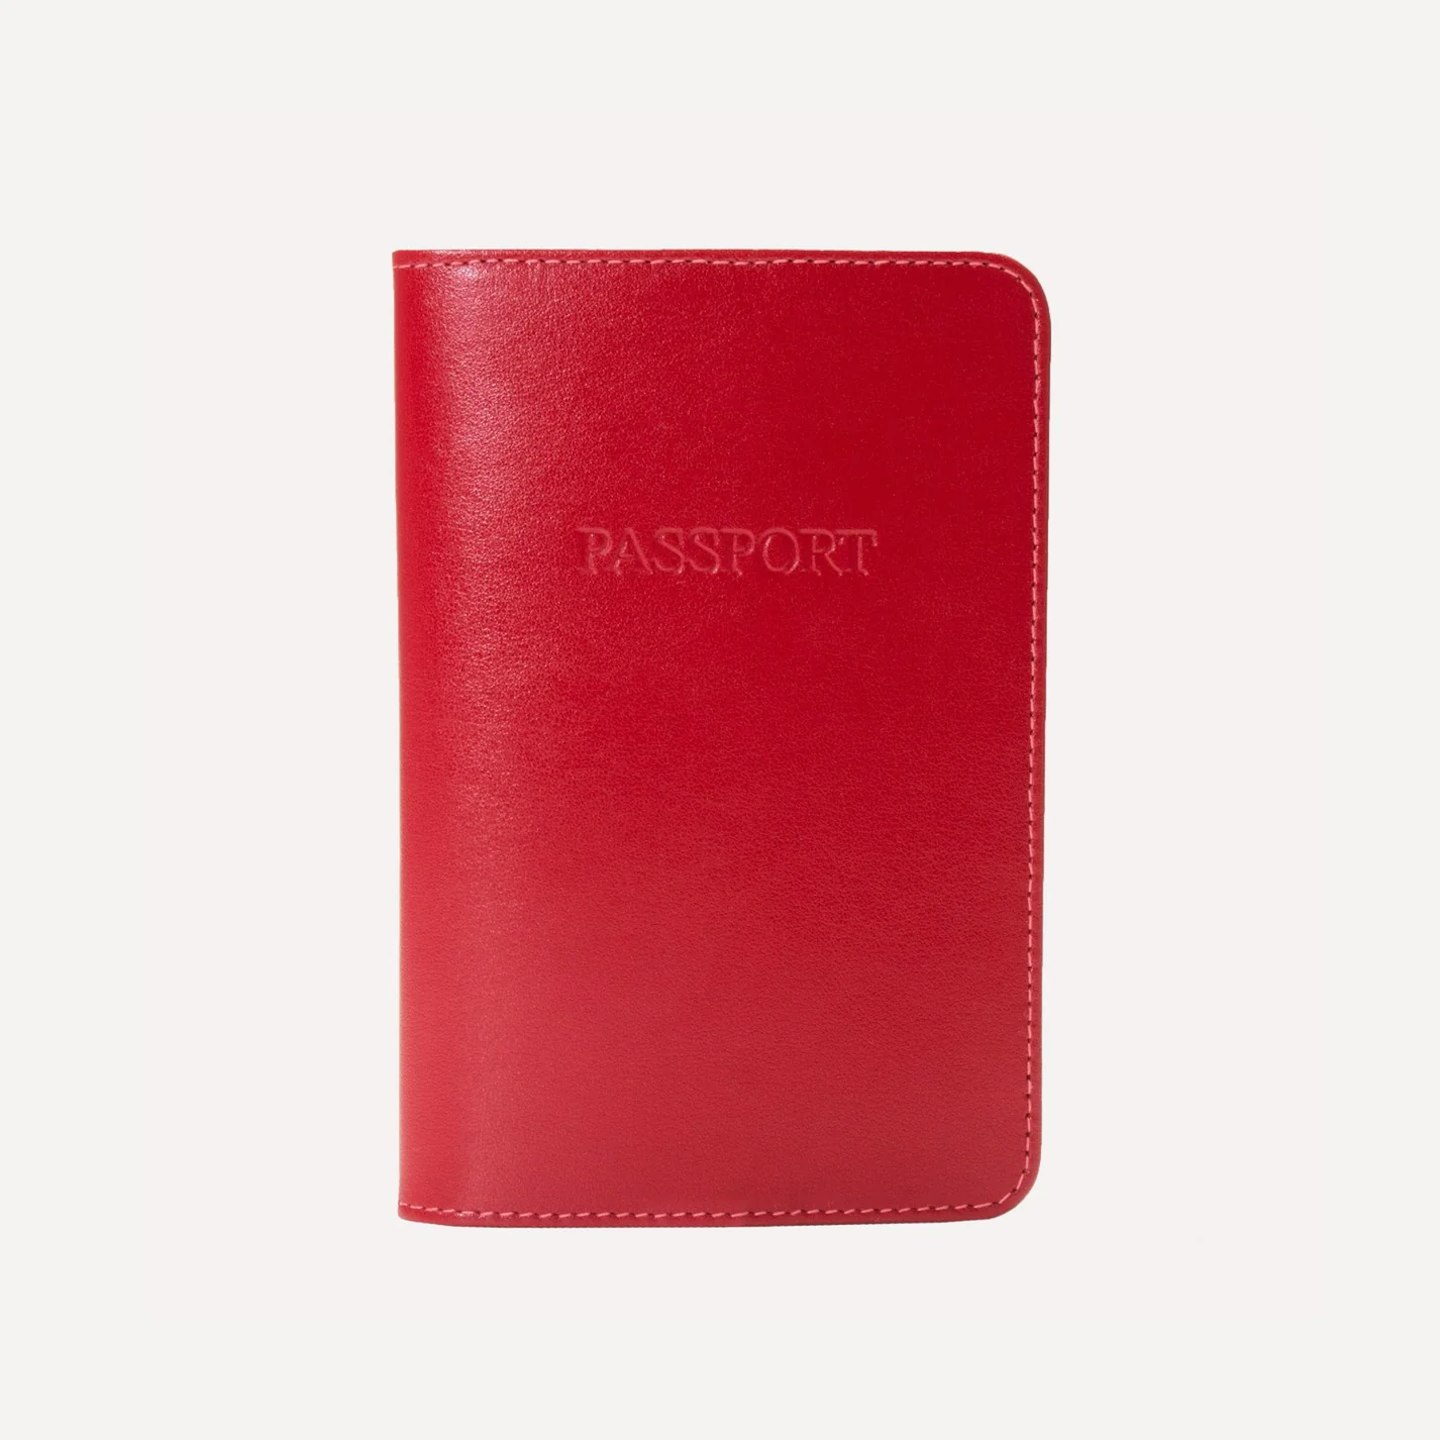 ettinger passport cover 